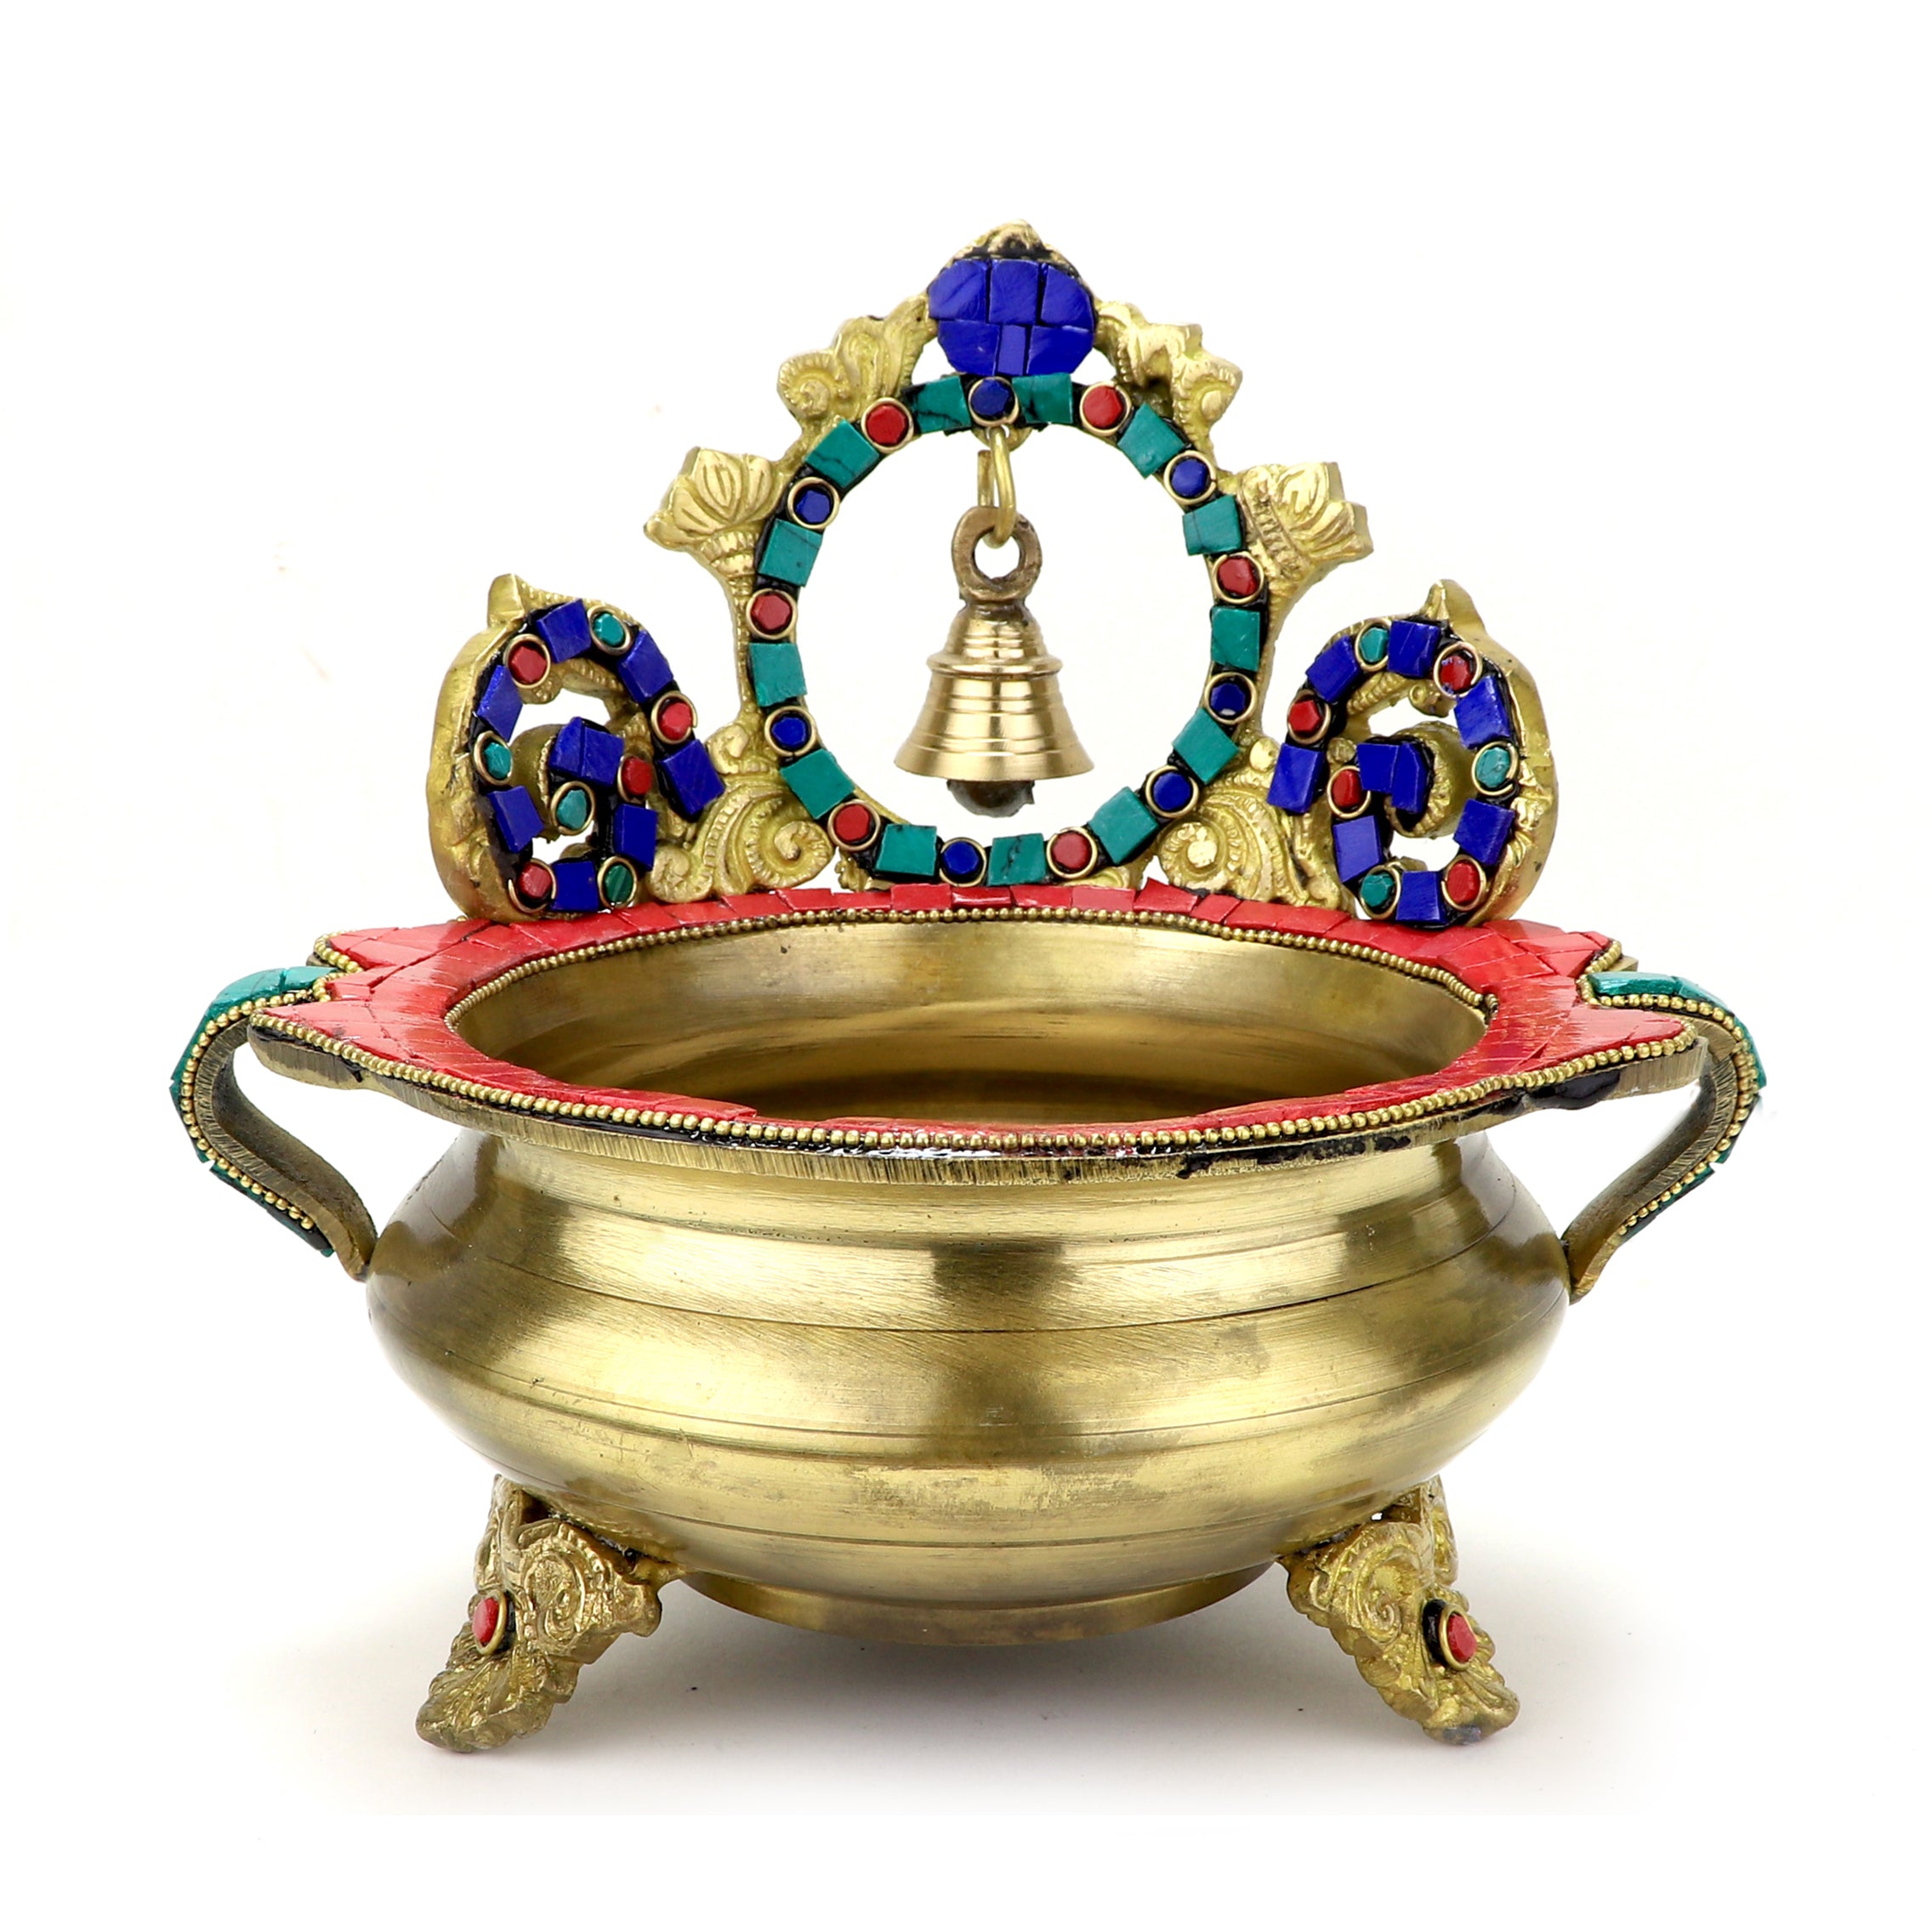 Brass Gemstone Work Ethnic Carved 7 Inches Décor Urli Showpiece with Bell